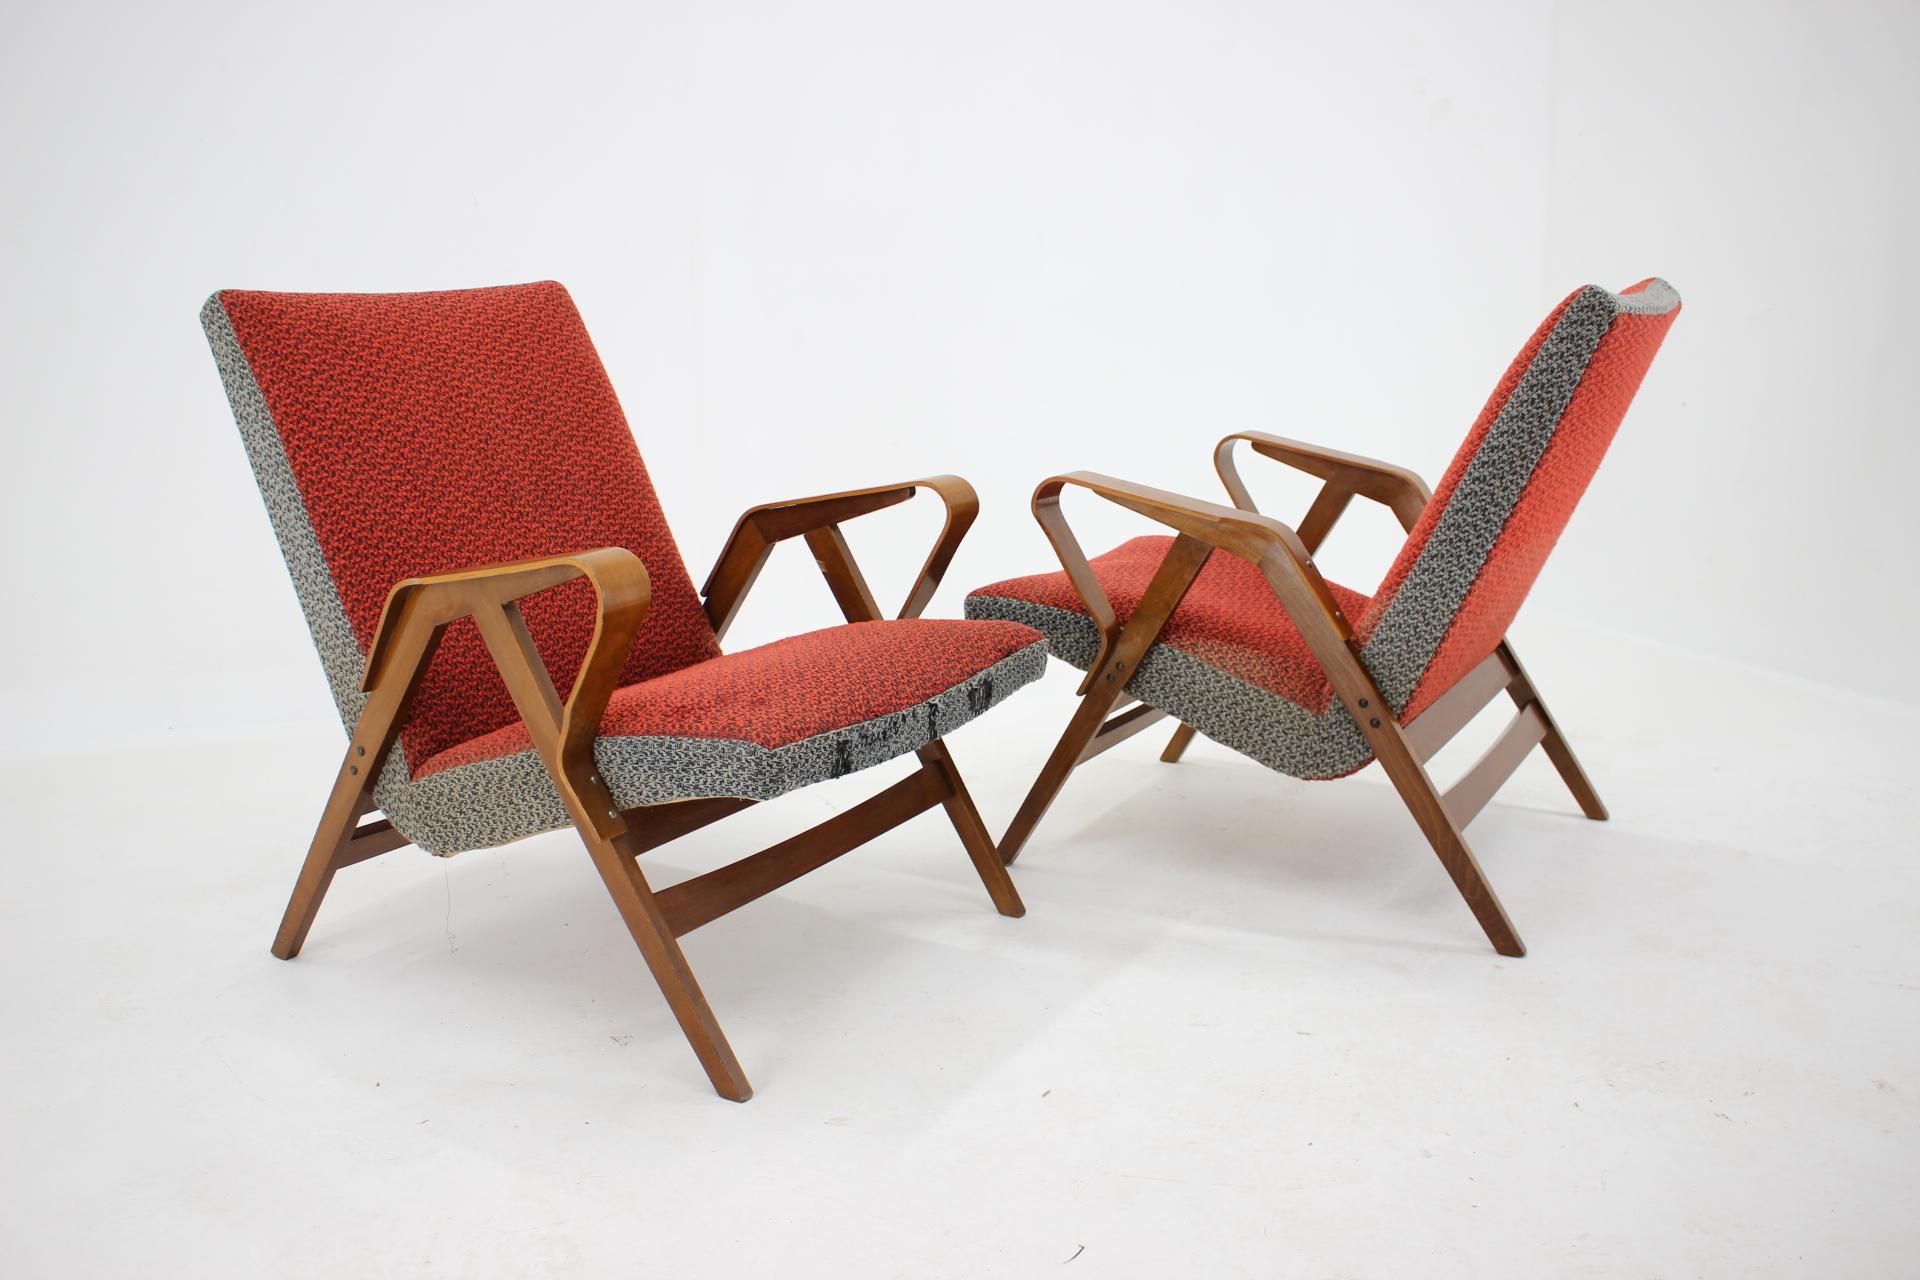 - Les chaises sont robustes et stables 
- convient pour les rembourrages neufs 
- Étiqueté par le producteur
- Hauteur du siège 40 cm.